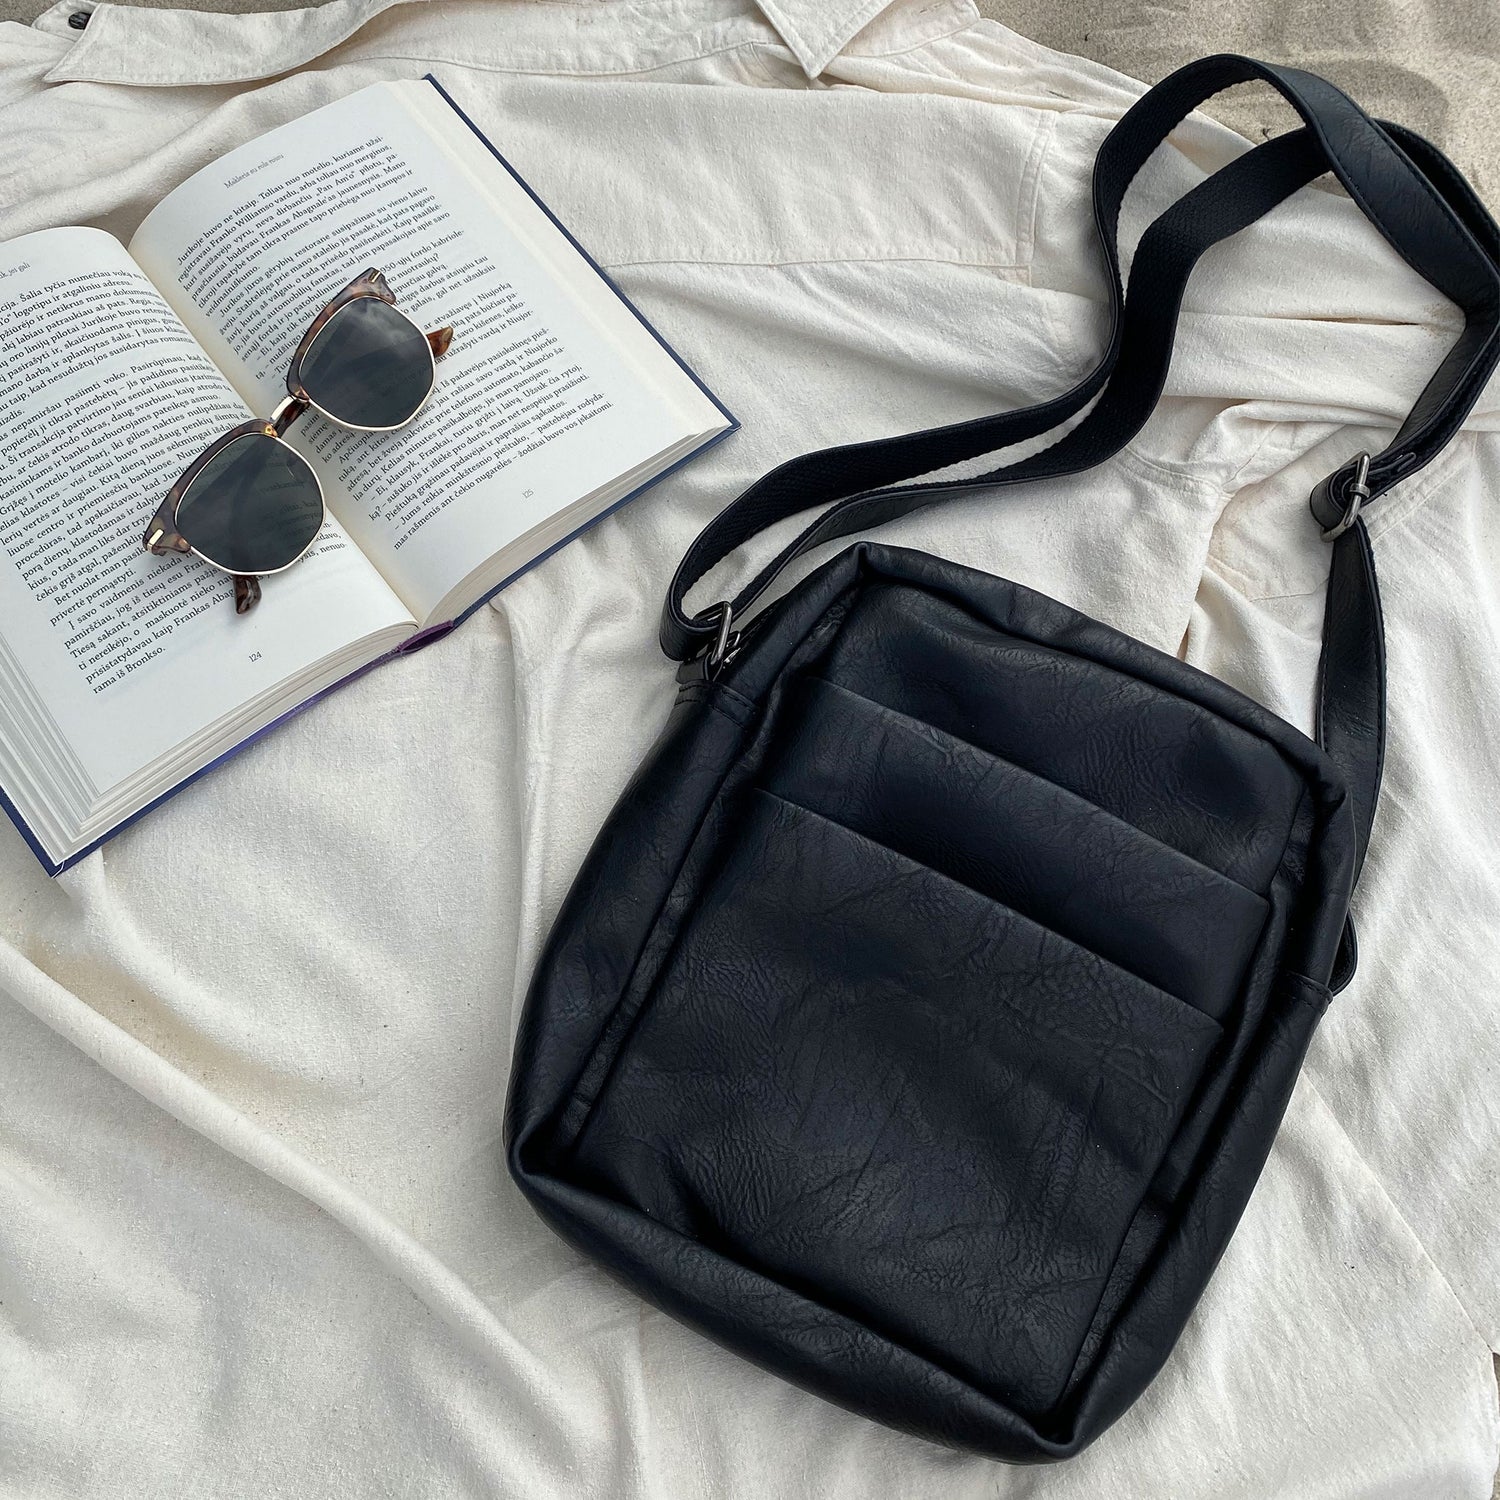 bagular crossbbody bag for men. Black shoulder bag made from faux vegan leather. Soft, lightweight and durable bag, gift for him